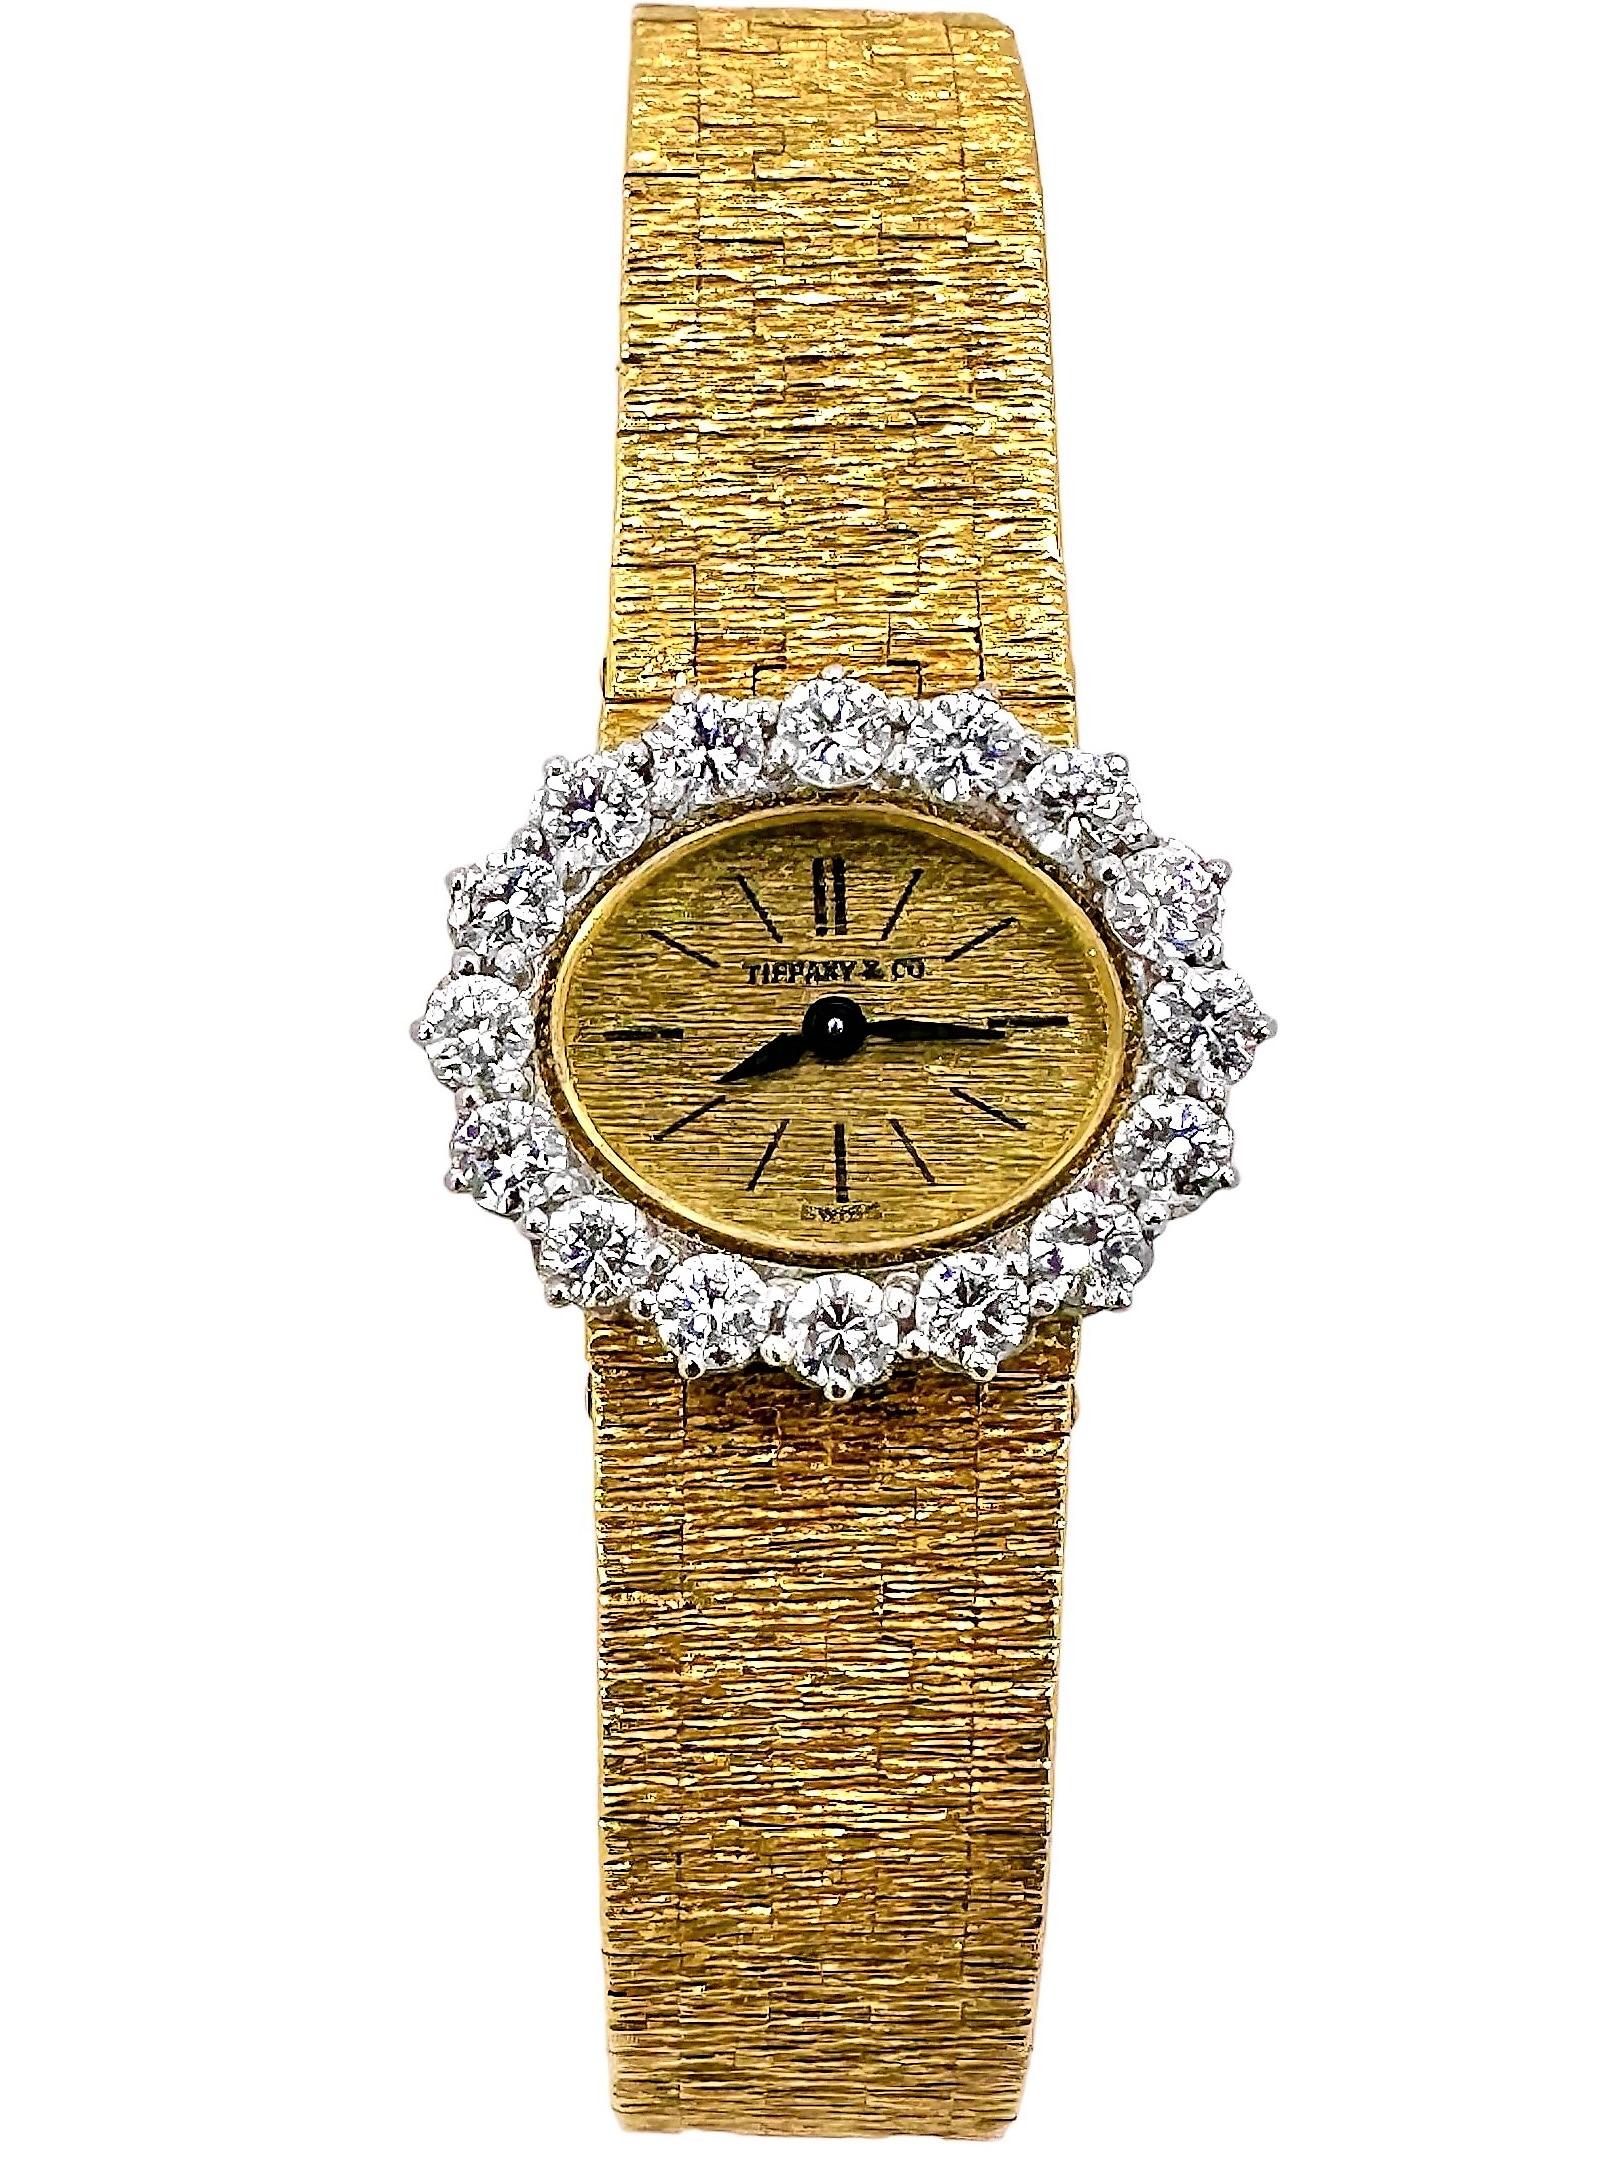 Cette ravissante montre-bracelet vintage Petite Size Piaget a été conçue et créée à Genève, en Suisse, au siège mondial de ce fabricant vénéré. Le tic-tac de cette superbe pièce d'horlogerie est un mouvement mécanique ultrafin Piaget à remontage